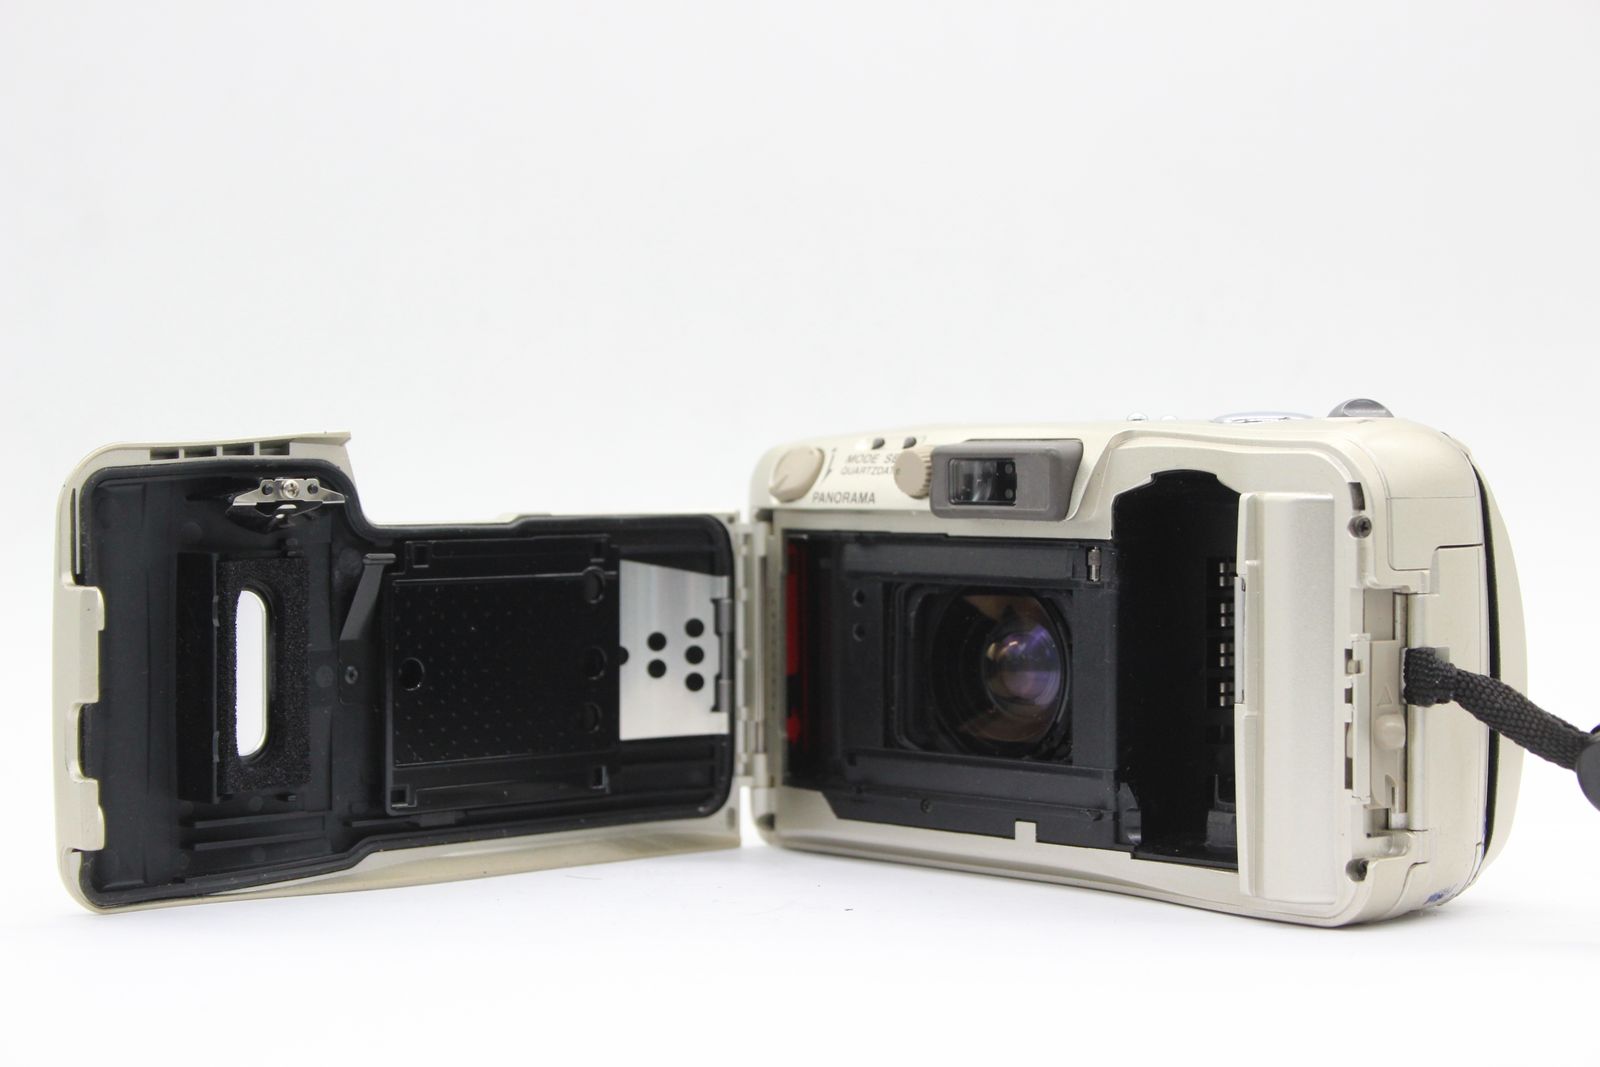 【返品保証】 オリンパス Olympus μ mju ZOOM 105 38-105mm コンパクトカメラ s5007